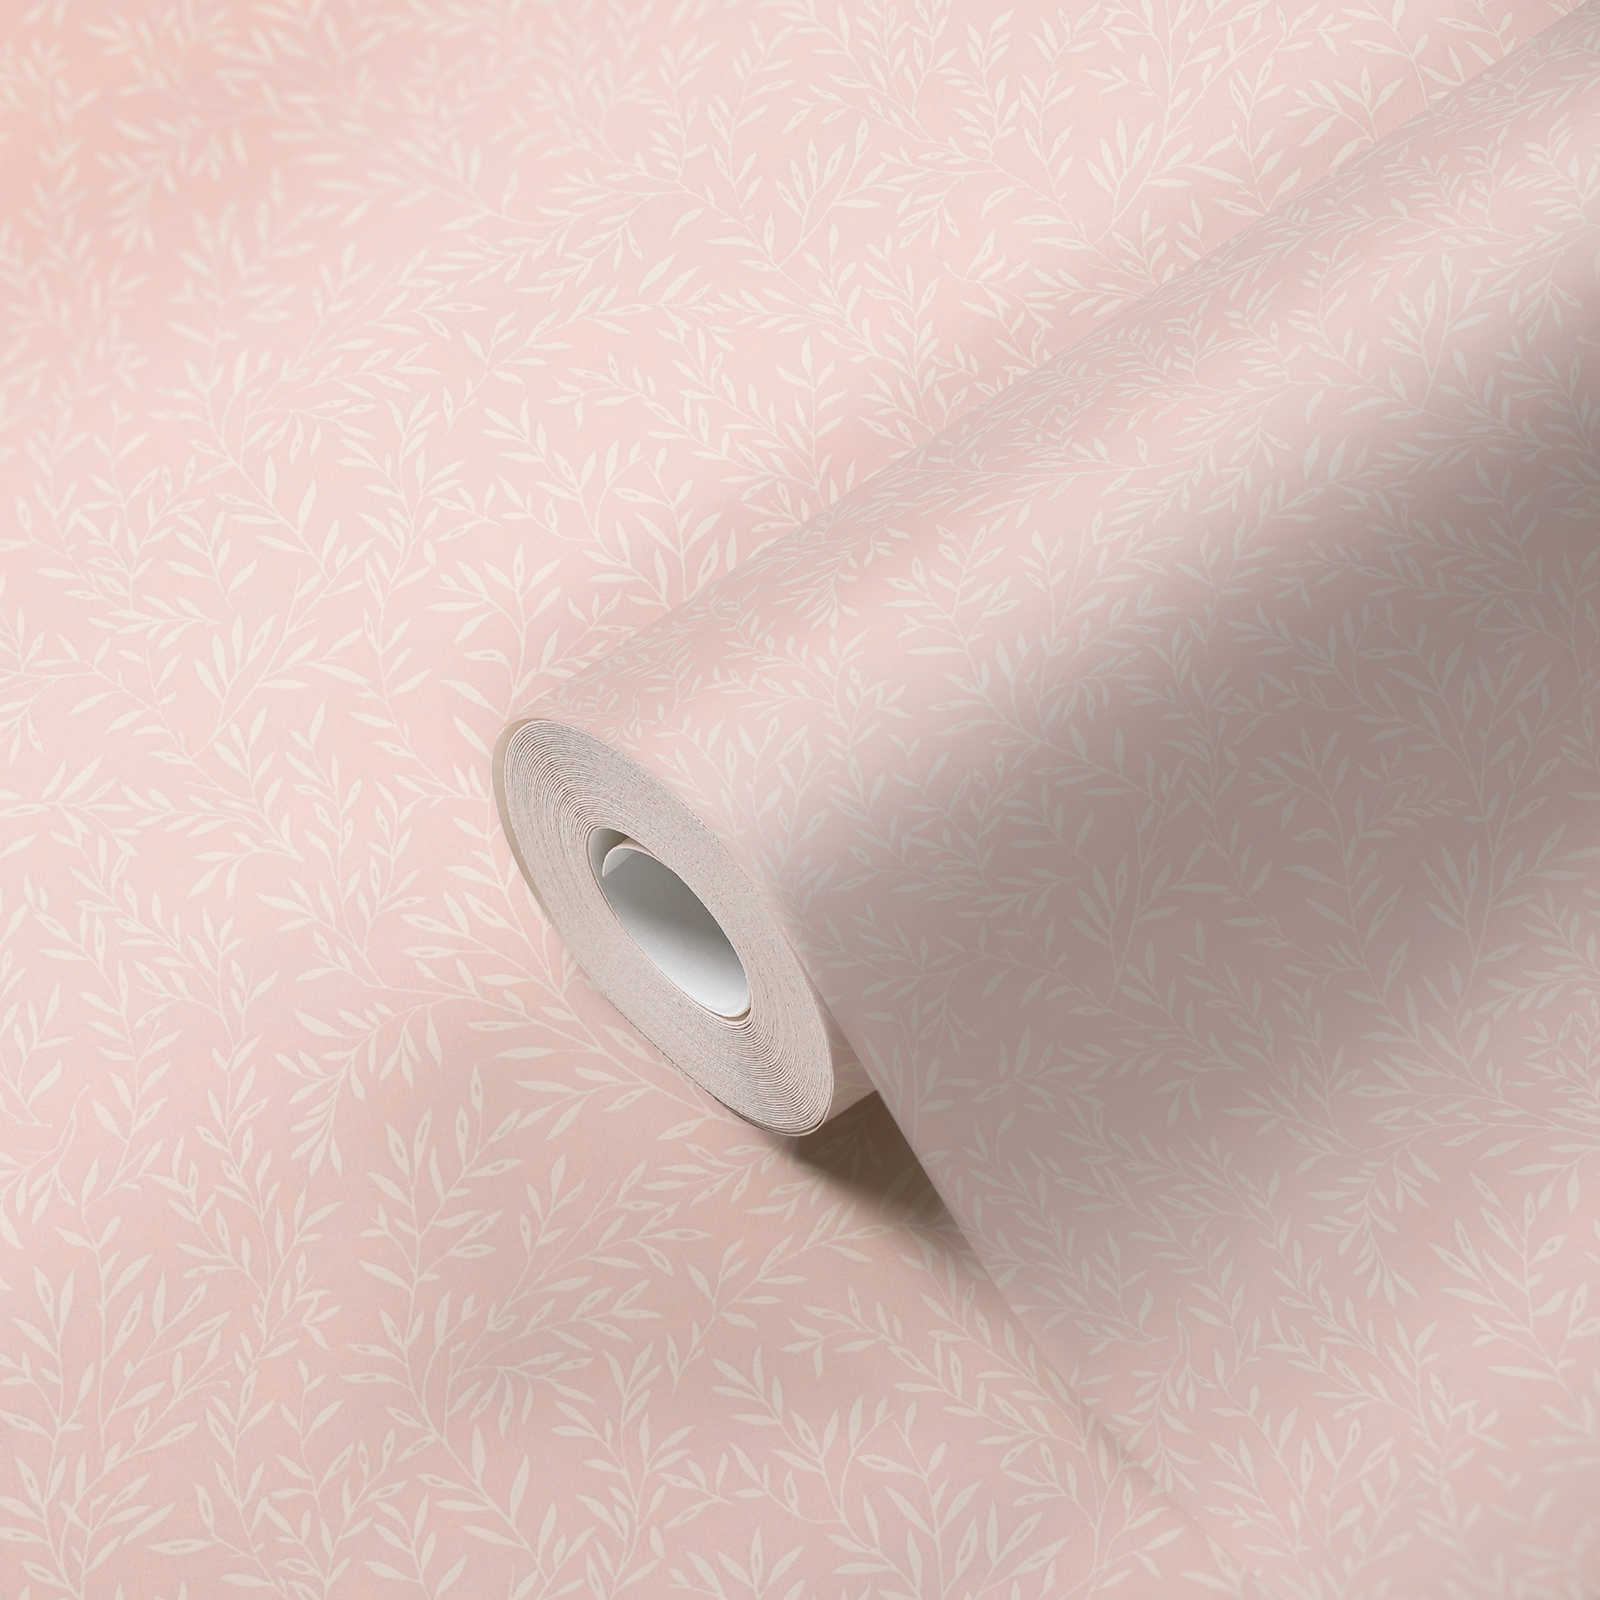             Landhaus Tapete mit Ranken Muster – Rosa, Weiß
        